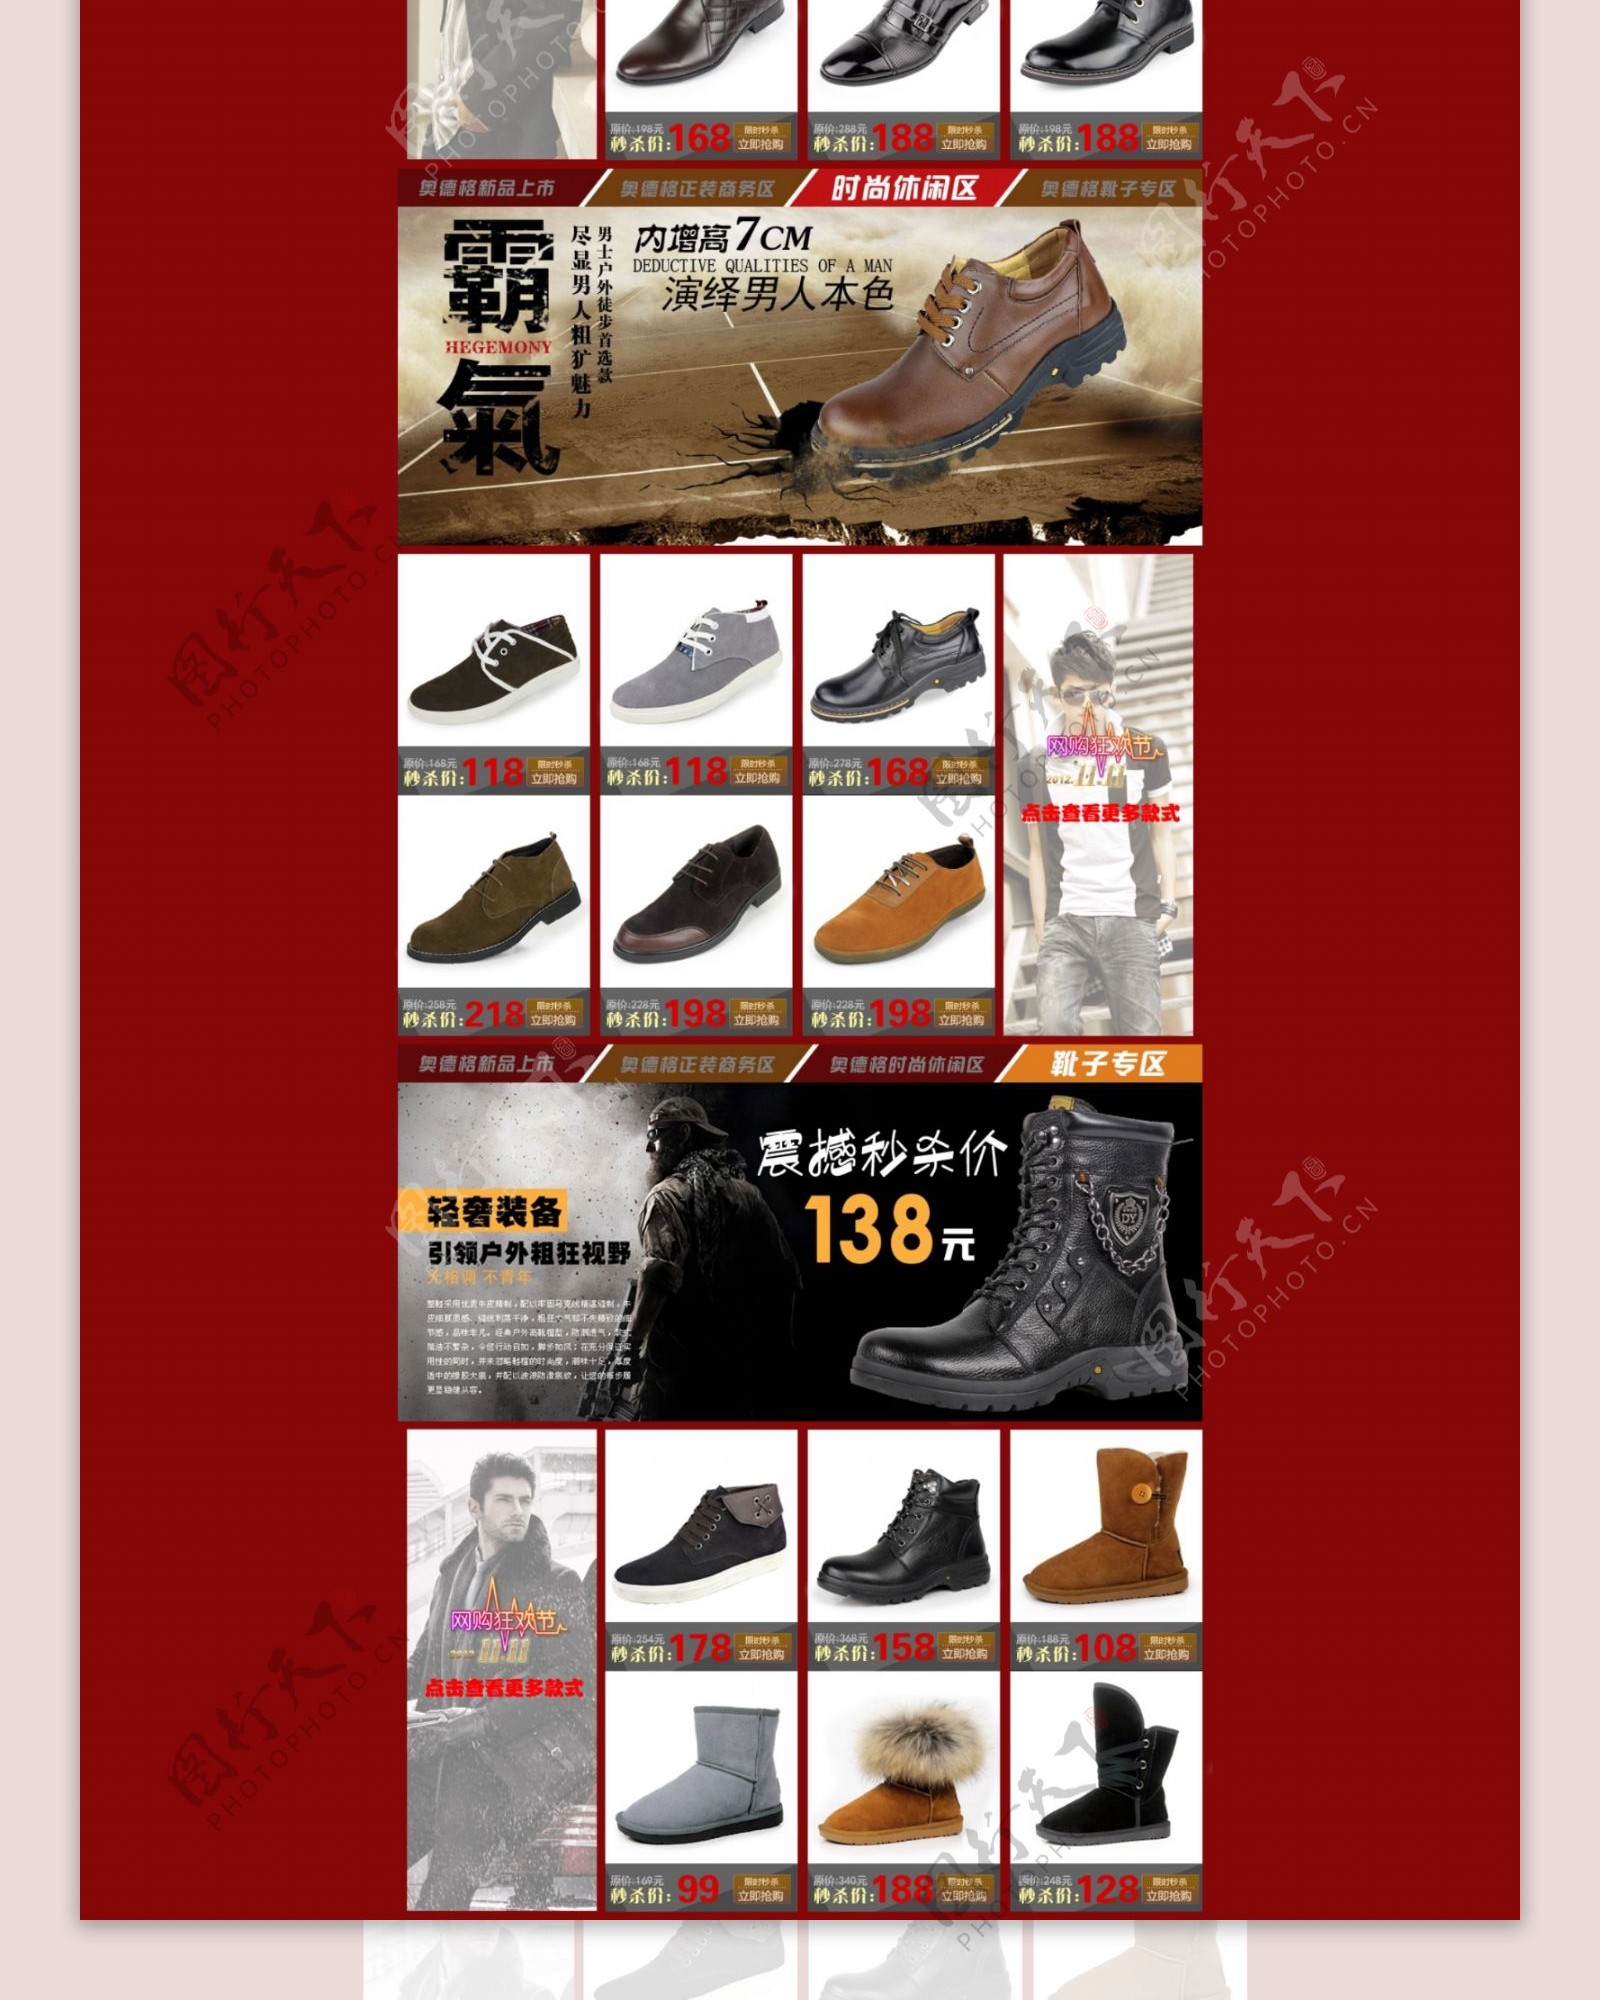 男士皮鞋双十一促销网店首页模板